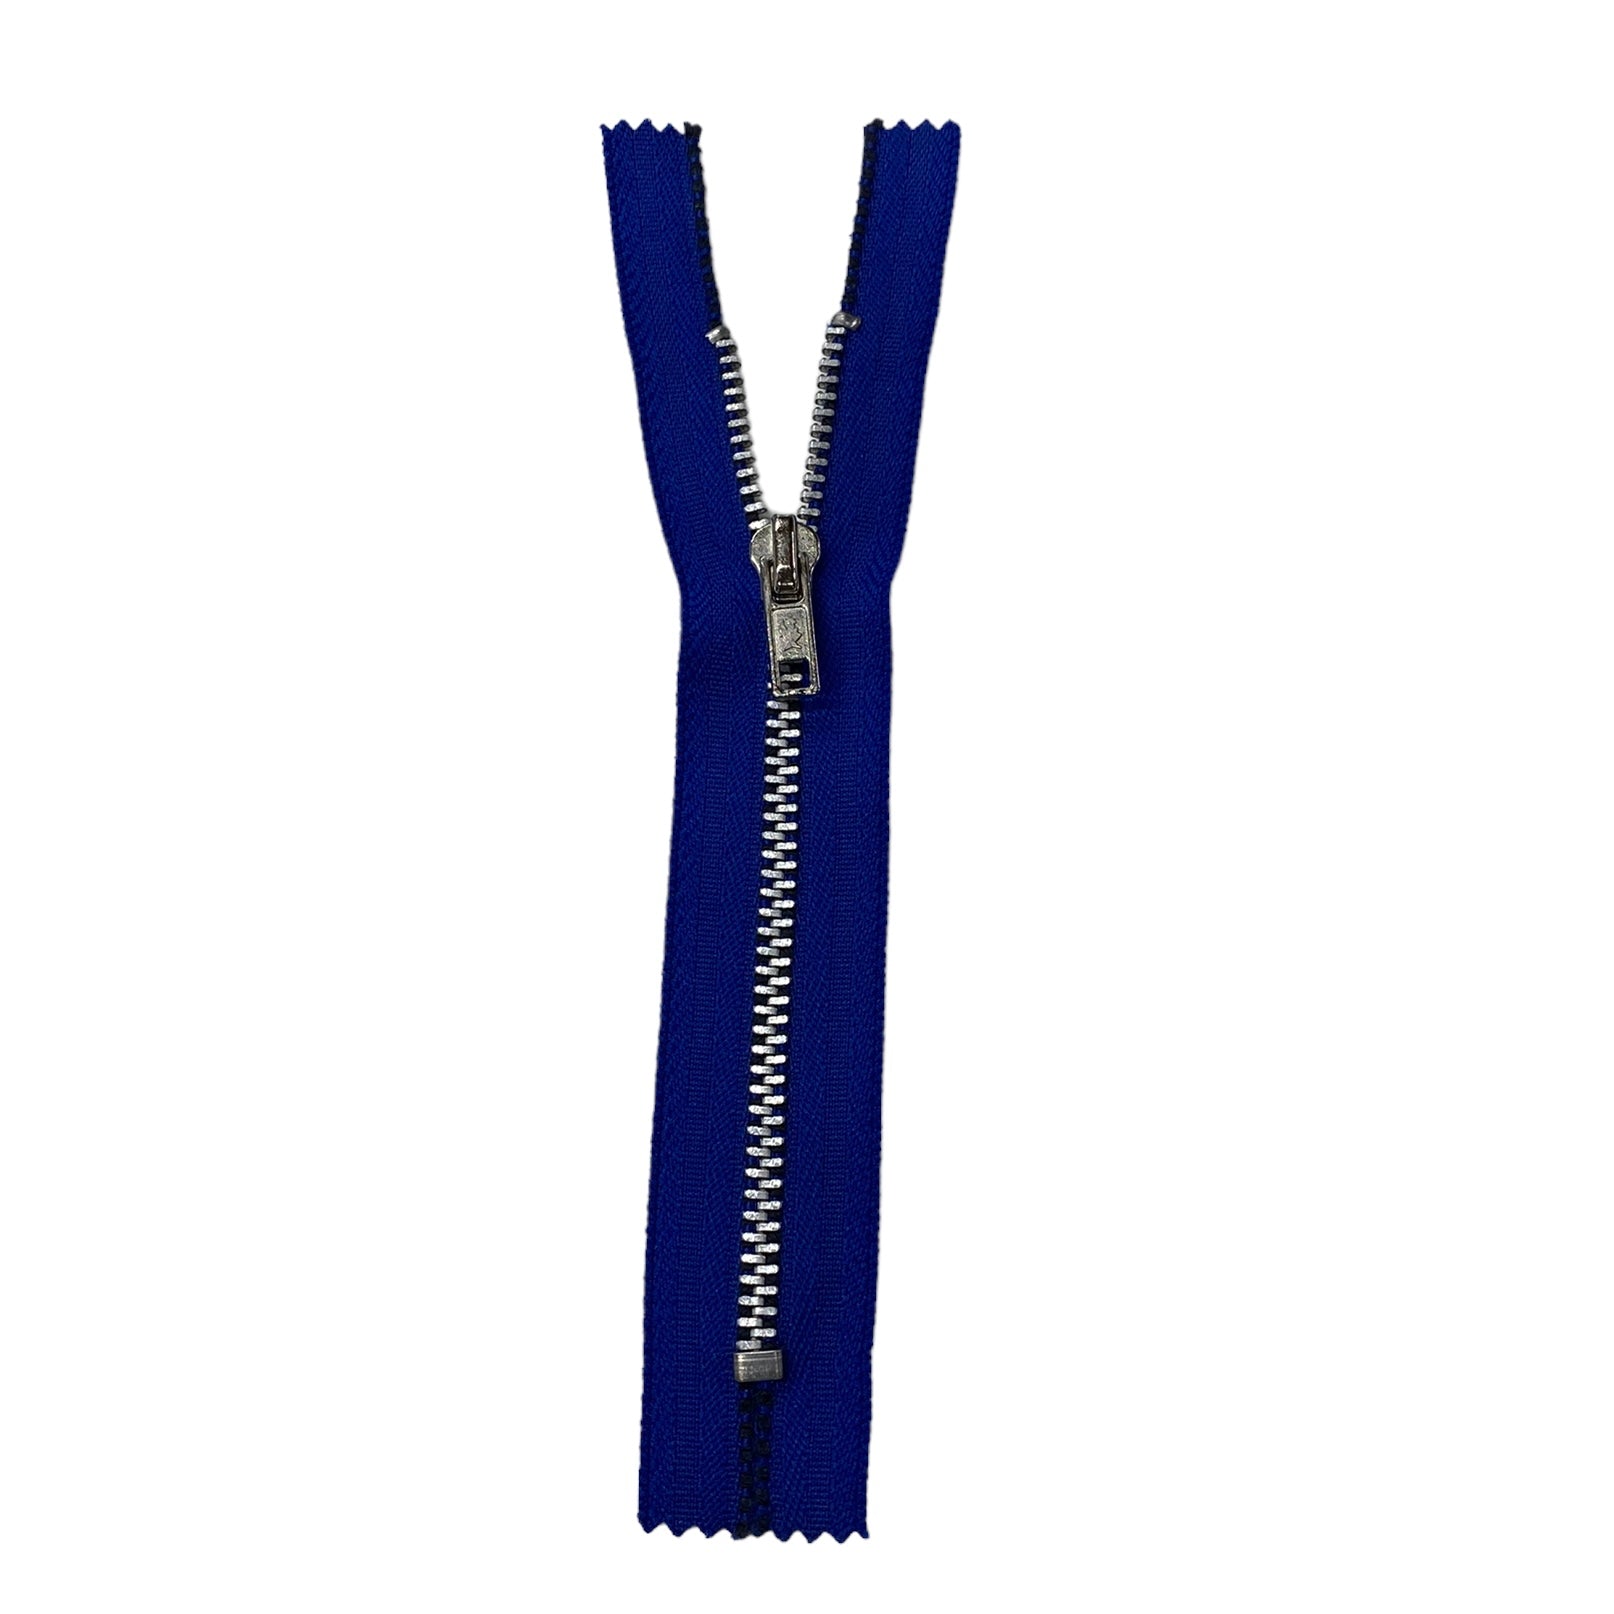 Regular Metal Zipper - 5” - Blue/Silver